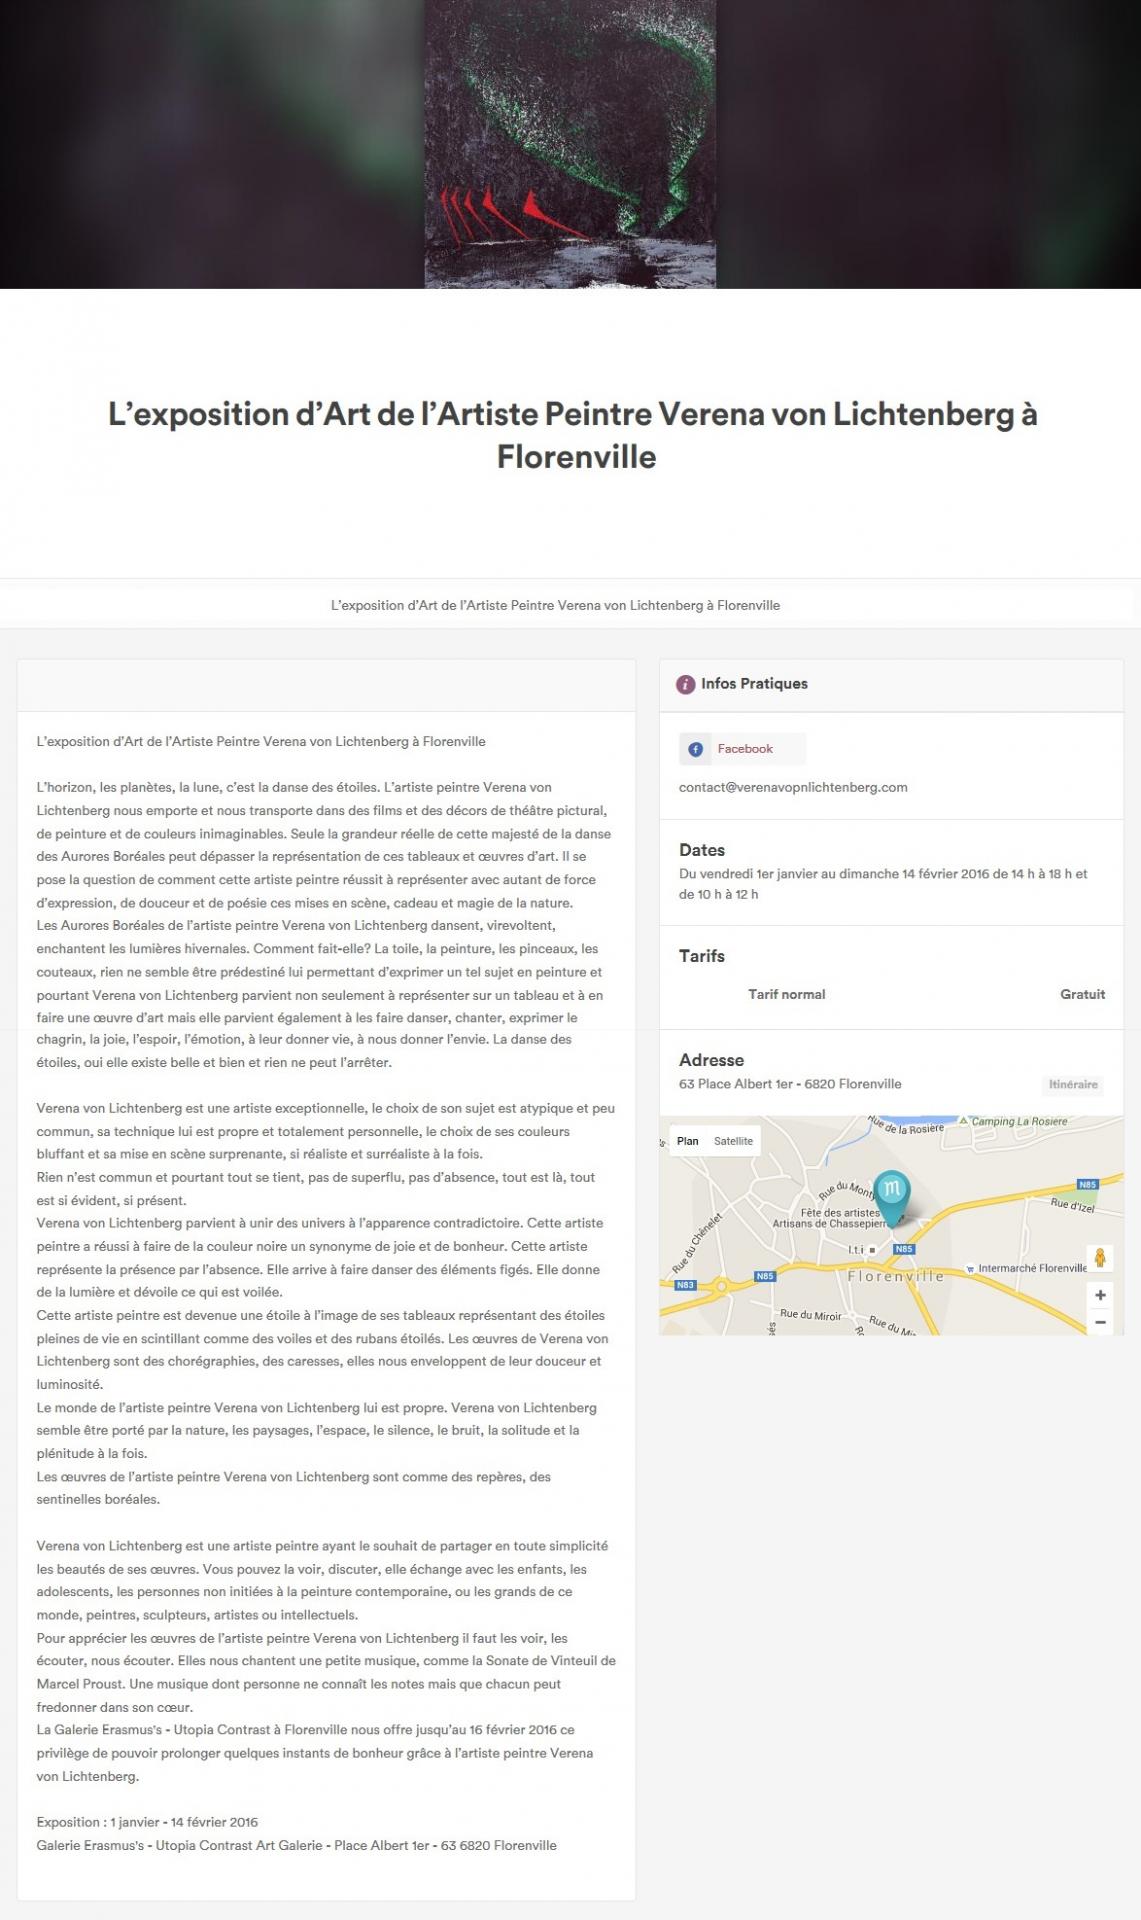 1 florenville the art galerie utopian and the painter verena von lichtenberg and her exhibition nord licht